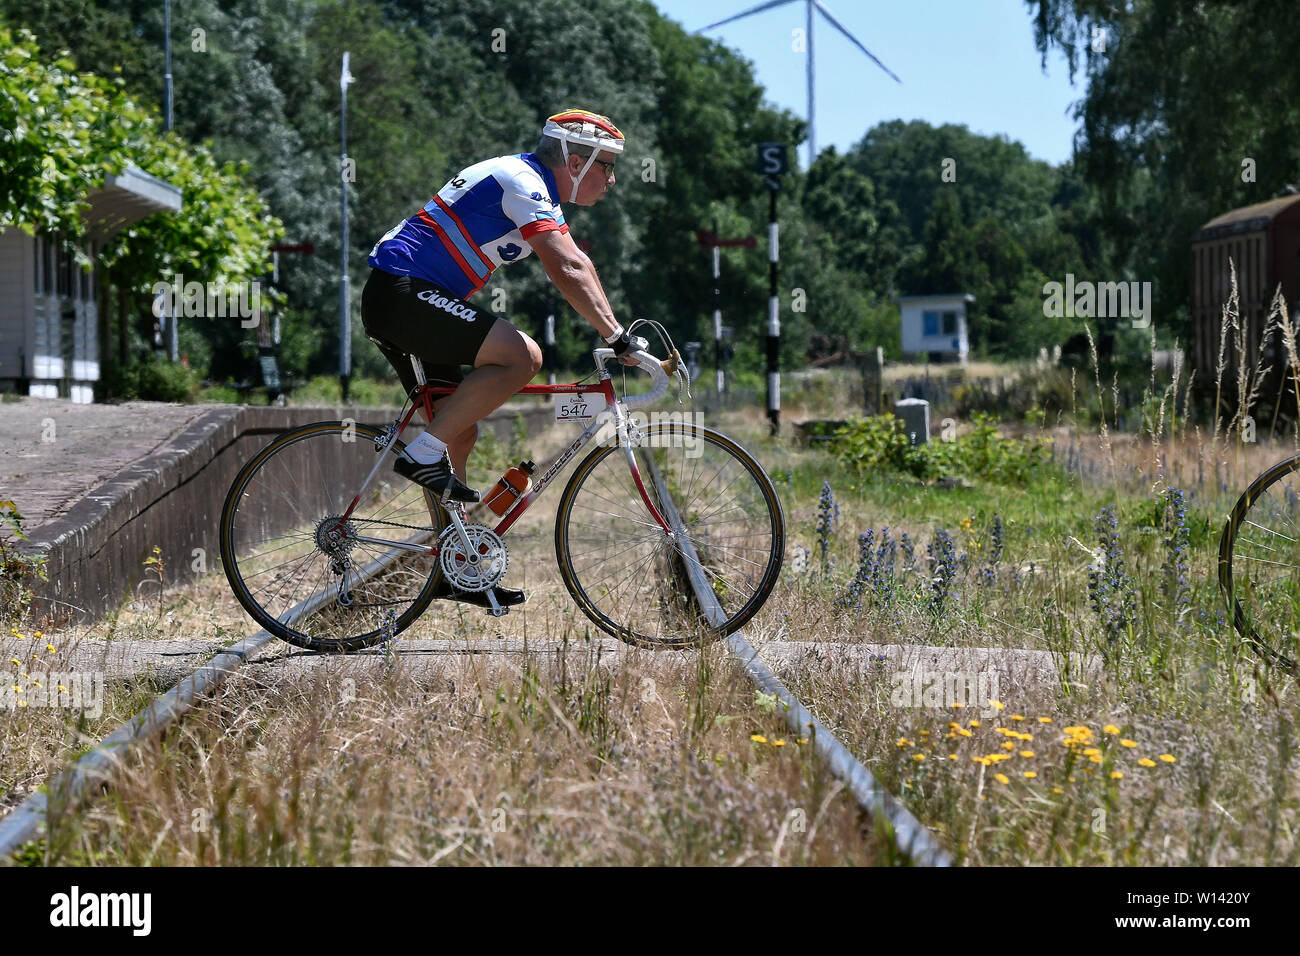 Partecipante del Limburgo eroica, un ciclo tour storico per bici da corsa nella regione olandese del Limburgo. Foto Stock